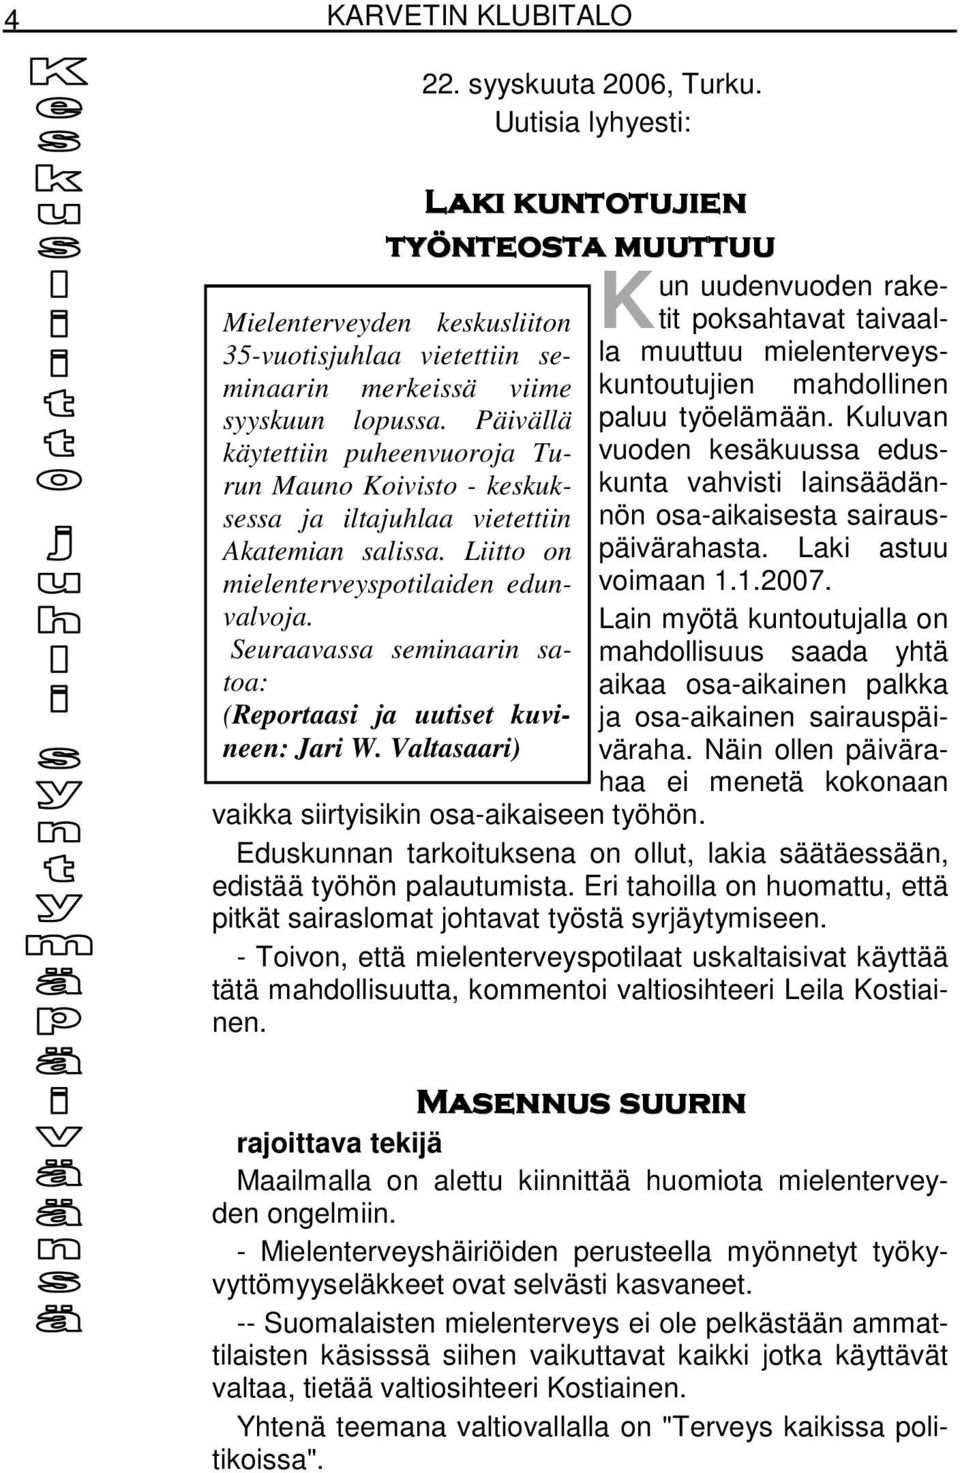 Päivällä käytettiin puheenvuoroja Turun Mauno Koivisto - keskuksessa ja iltajuhlaa vietettiin Akatemian salissa. Liitto on mielenterveyspotilaiden edunvalvoja.